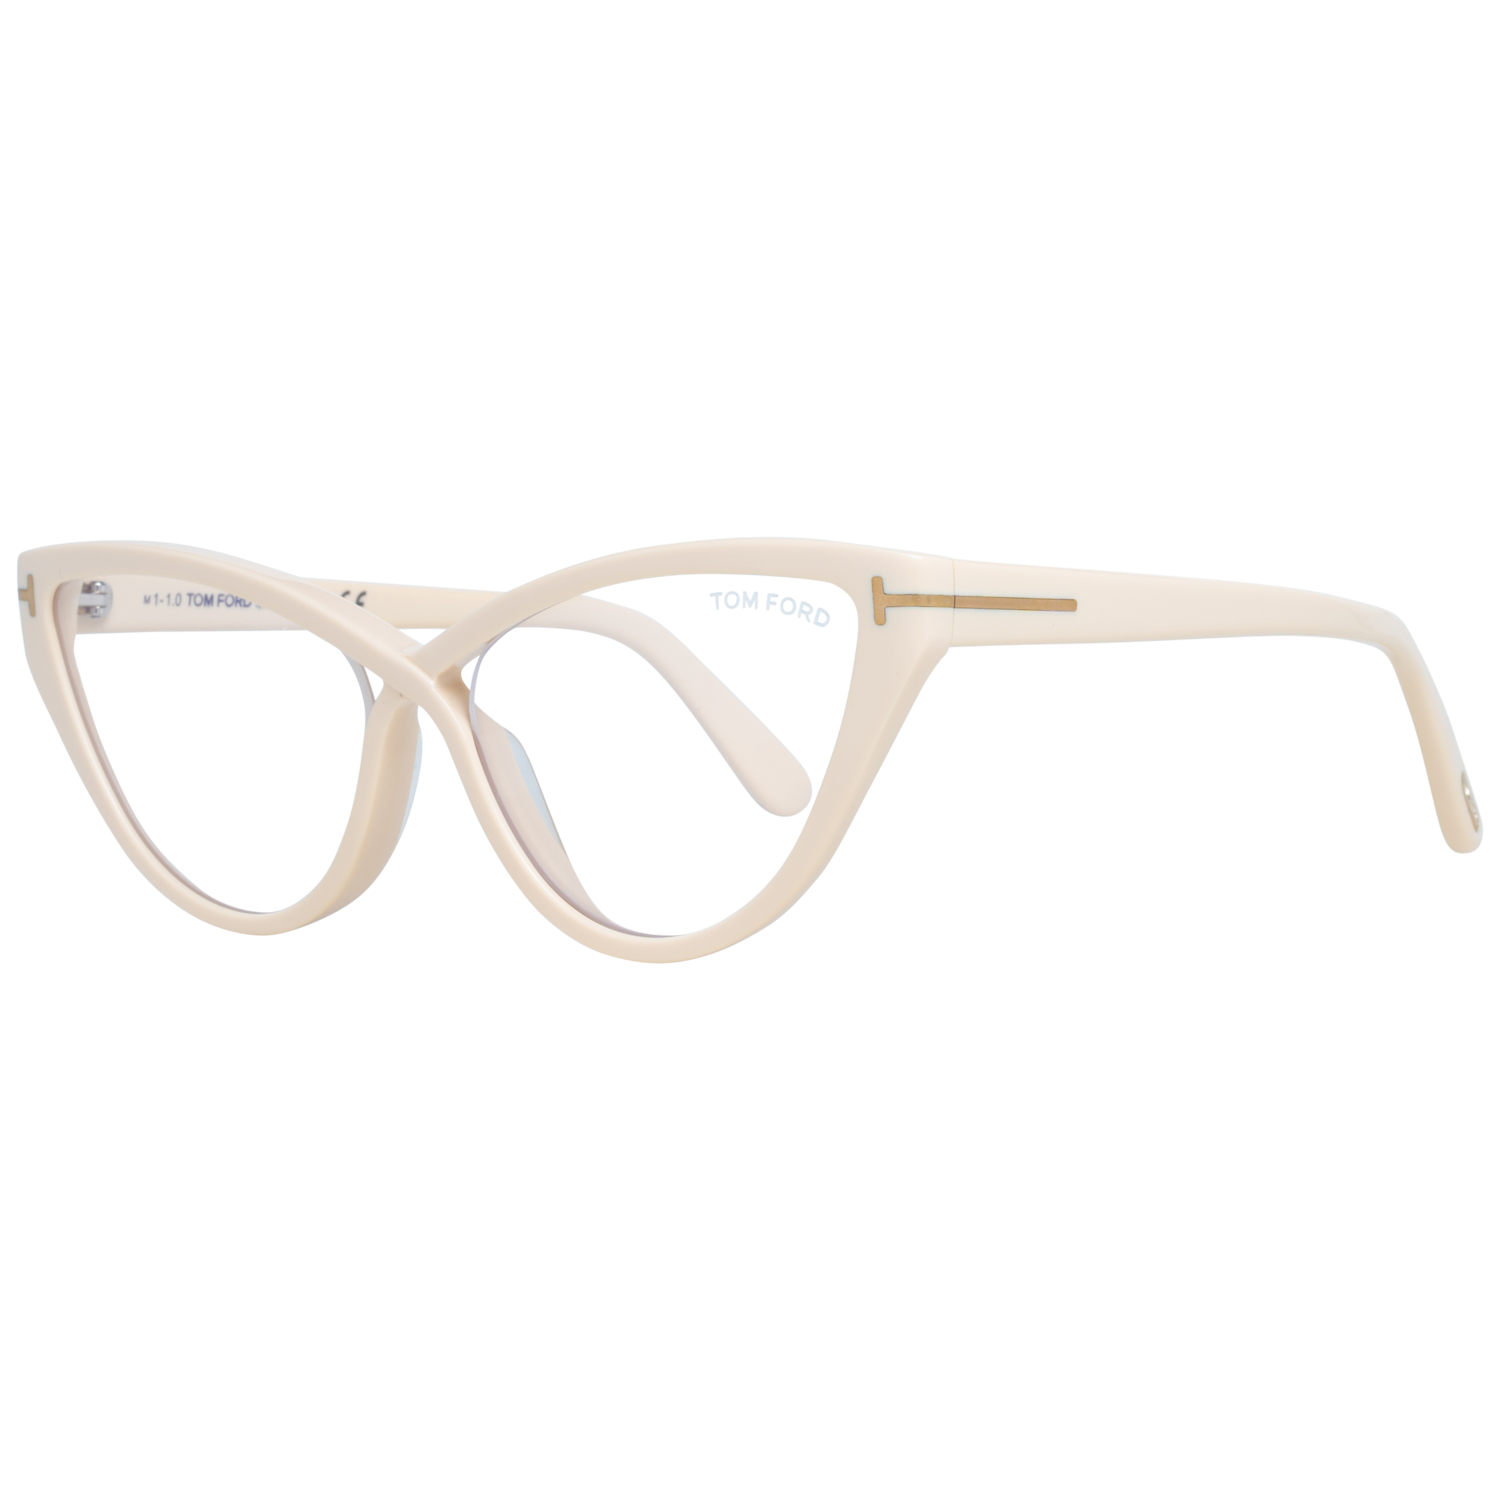 Tom Ford Eyeglasses Tom Ford Glasses Optical Frame FT5729-B 025 56 Blue Filter Eyeglasses Eyewear UK USA Australia 